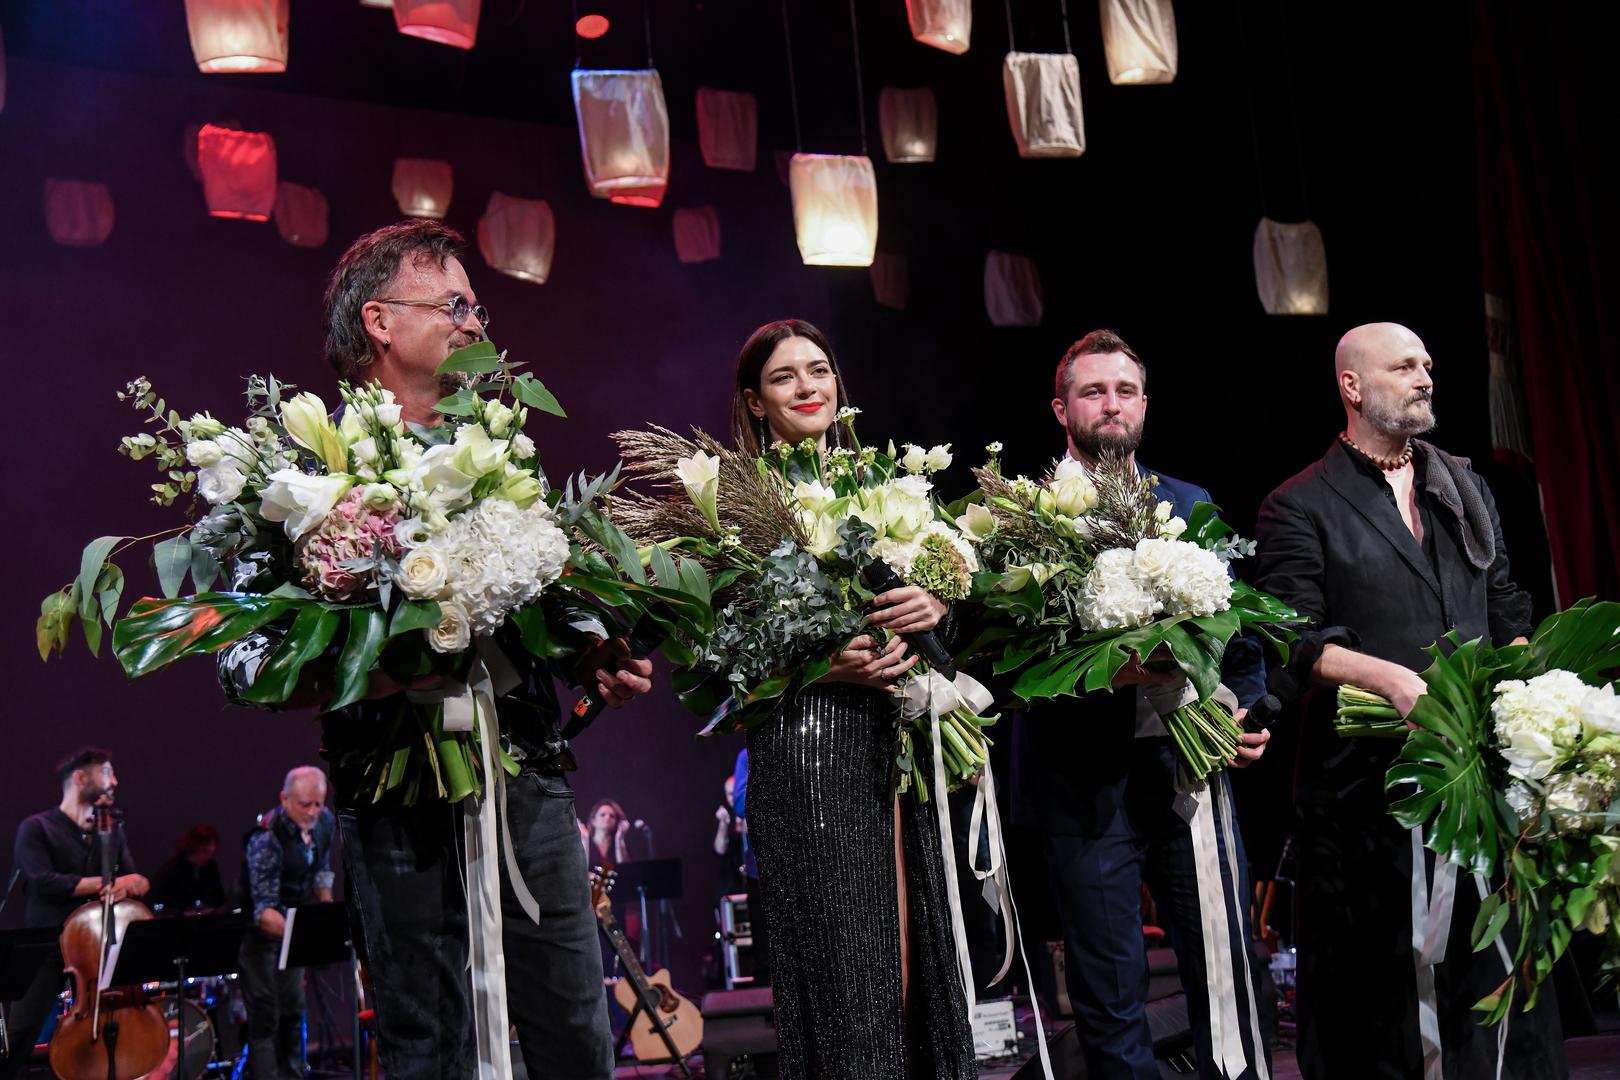 Koncertu su se odazvale najveće zvijezde hrvatske estrade: Gibonni, Mia Dimšić, Matija Cvek i Damir Urban.